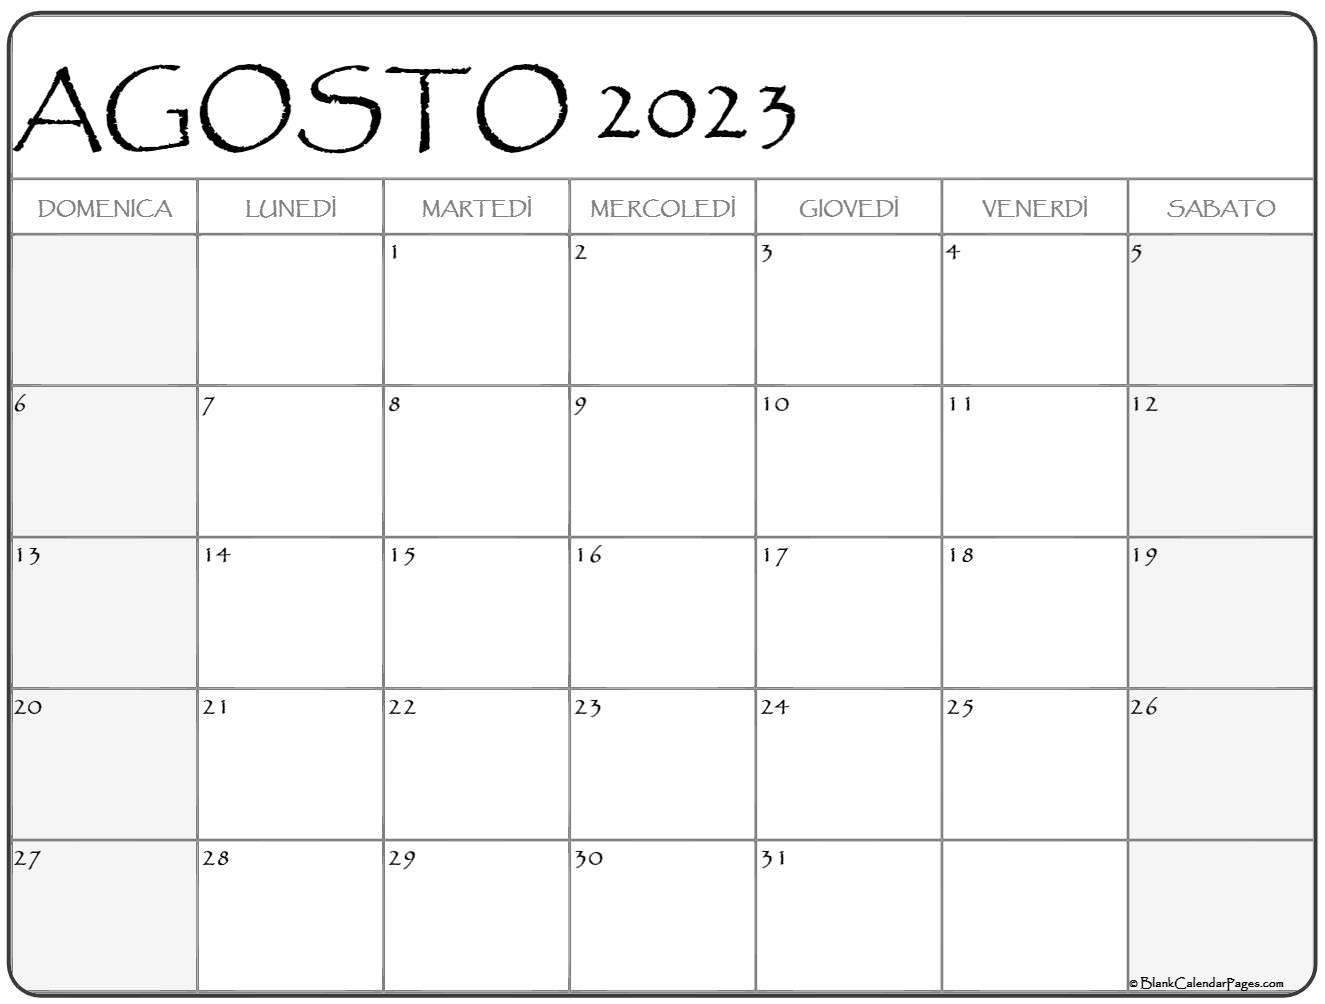 Calendario Agosto 2023 Para Imprimir Pdf Gratis - Reverasite